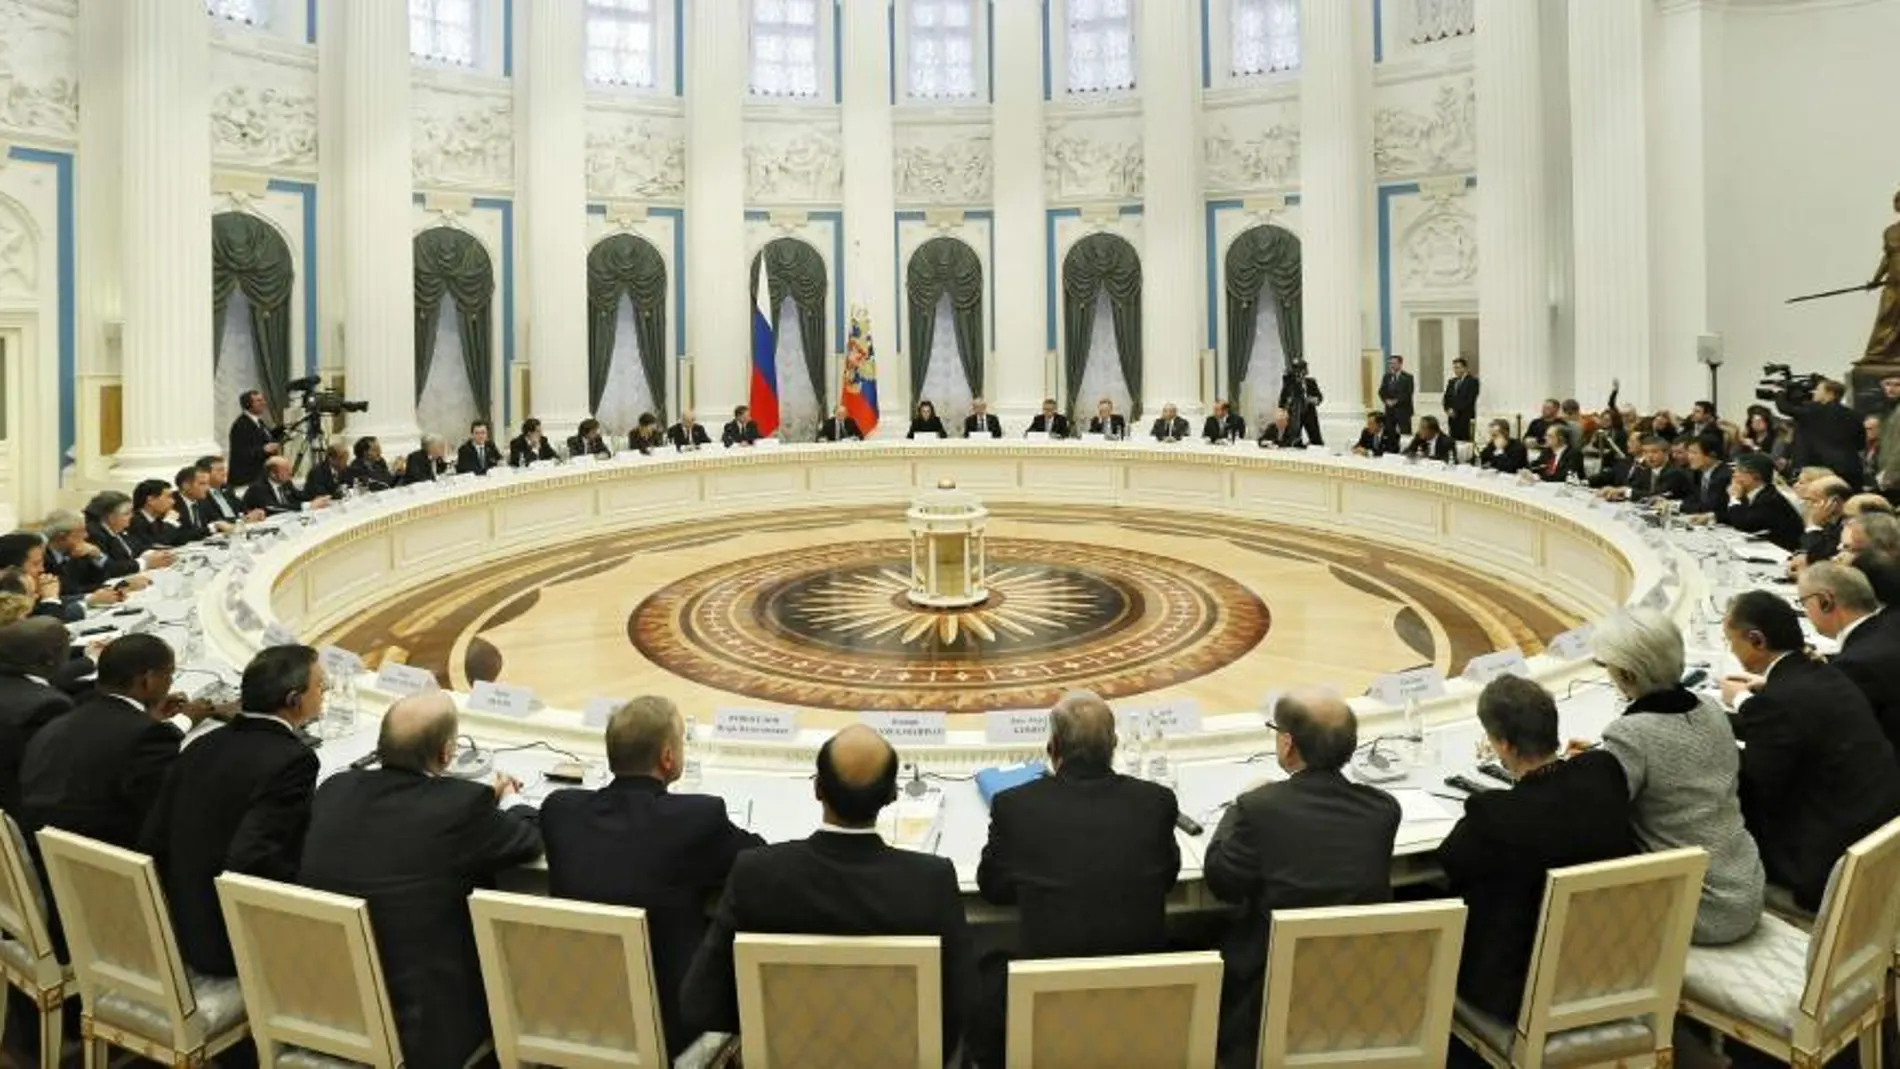 Reunión ministerial de los ministros de Finanzas y jefes de los bancos centrales del G20 en Moscú